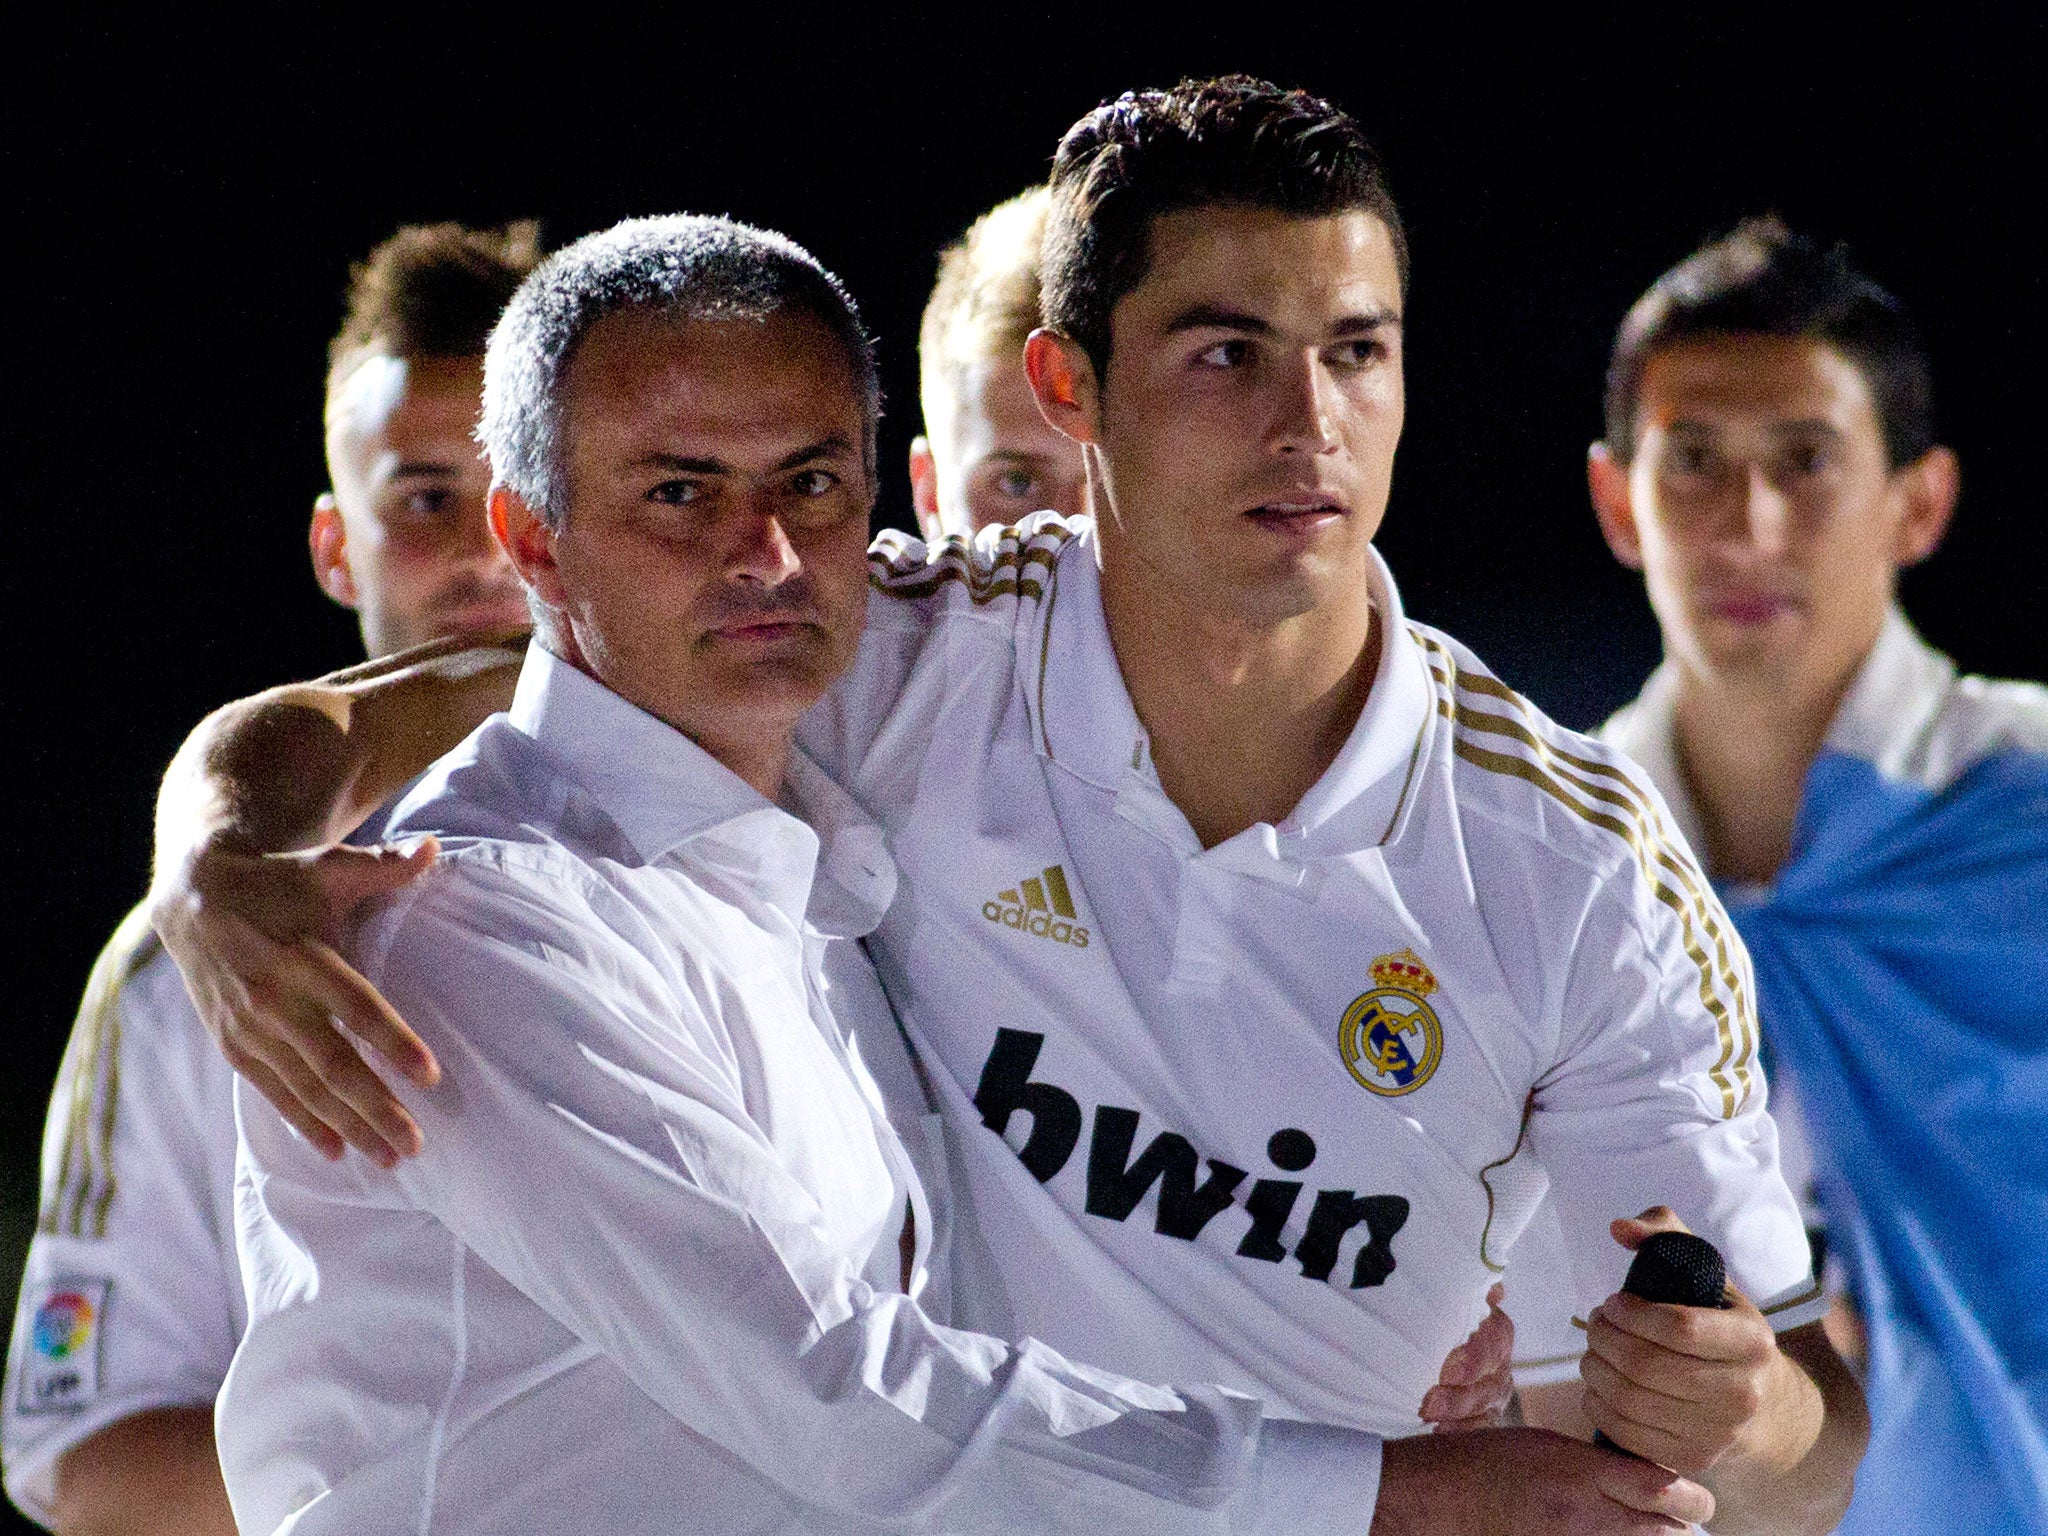 Jose Mourinho, Cristiano Ronaldo